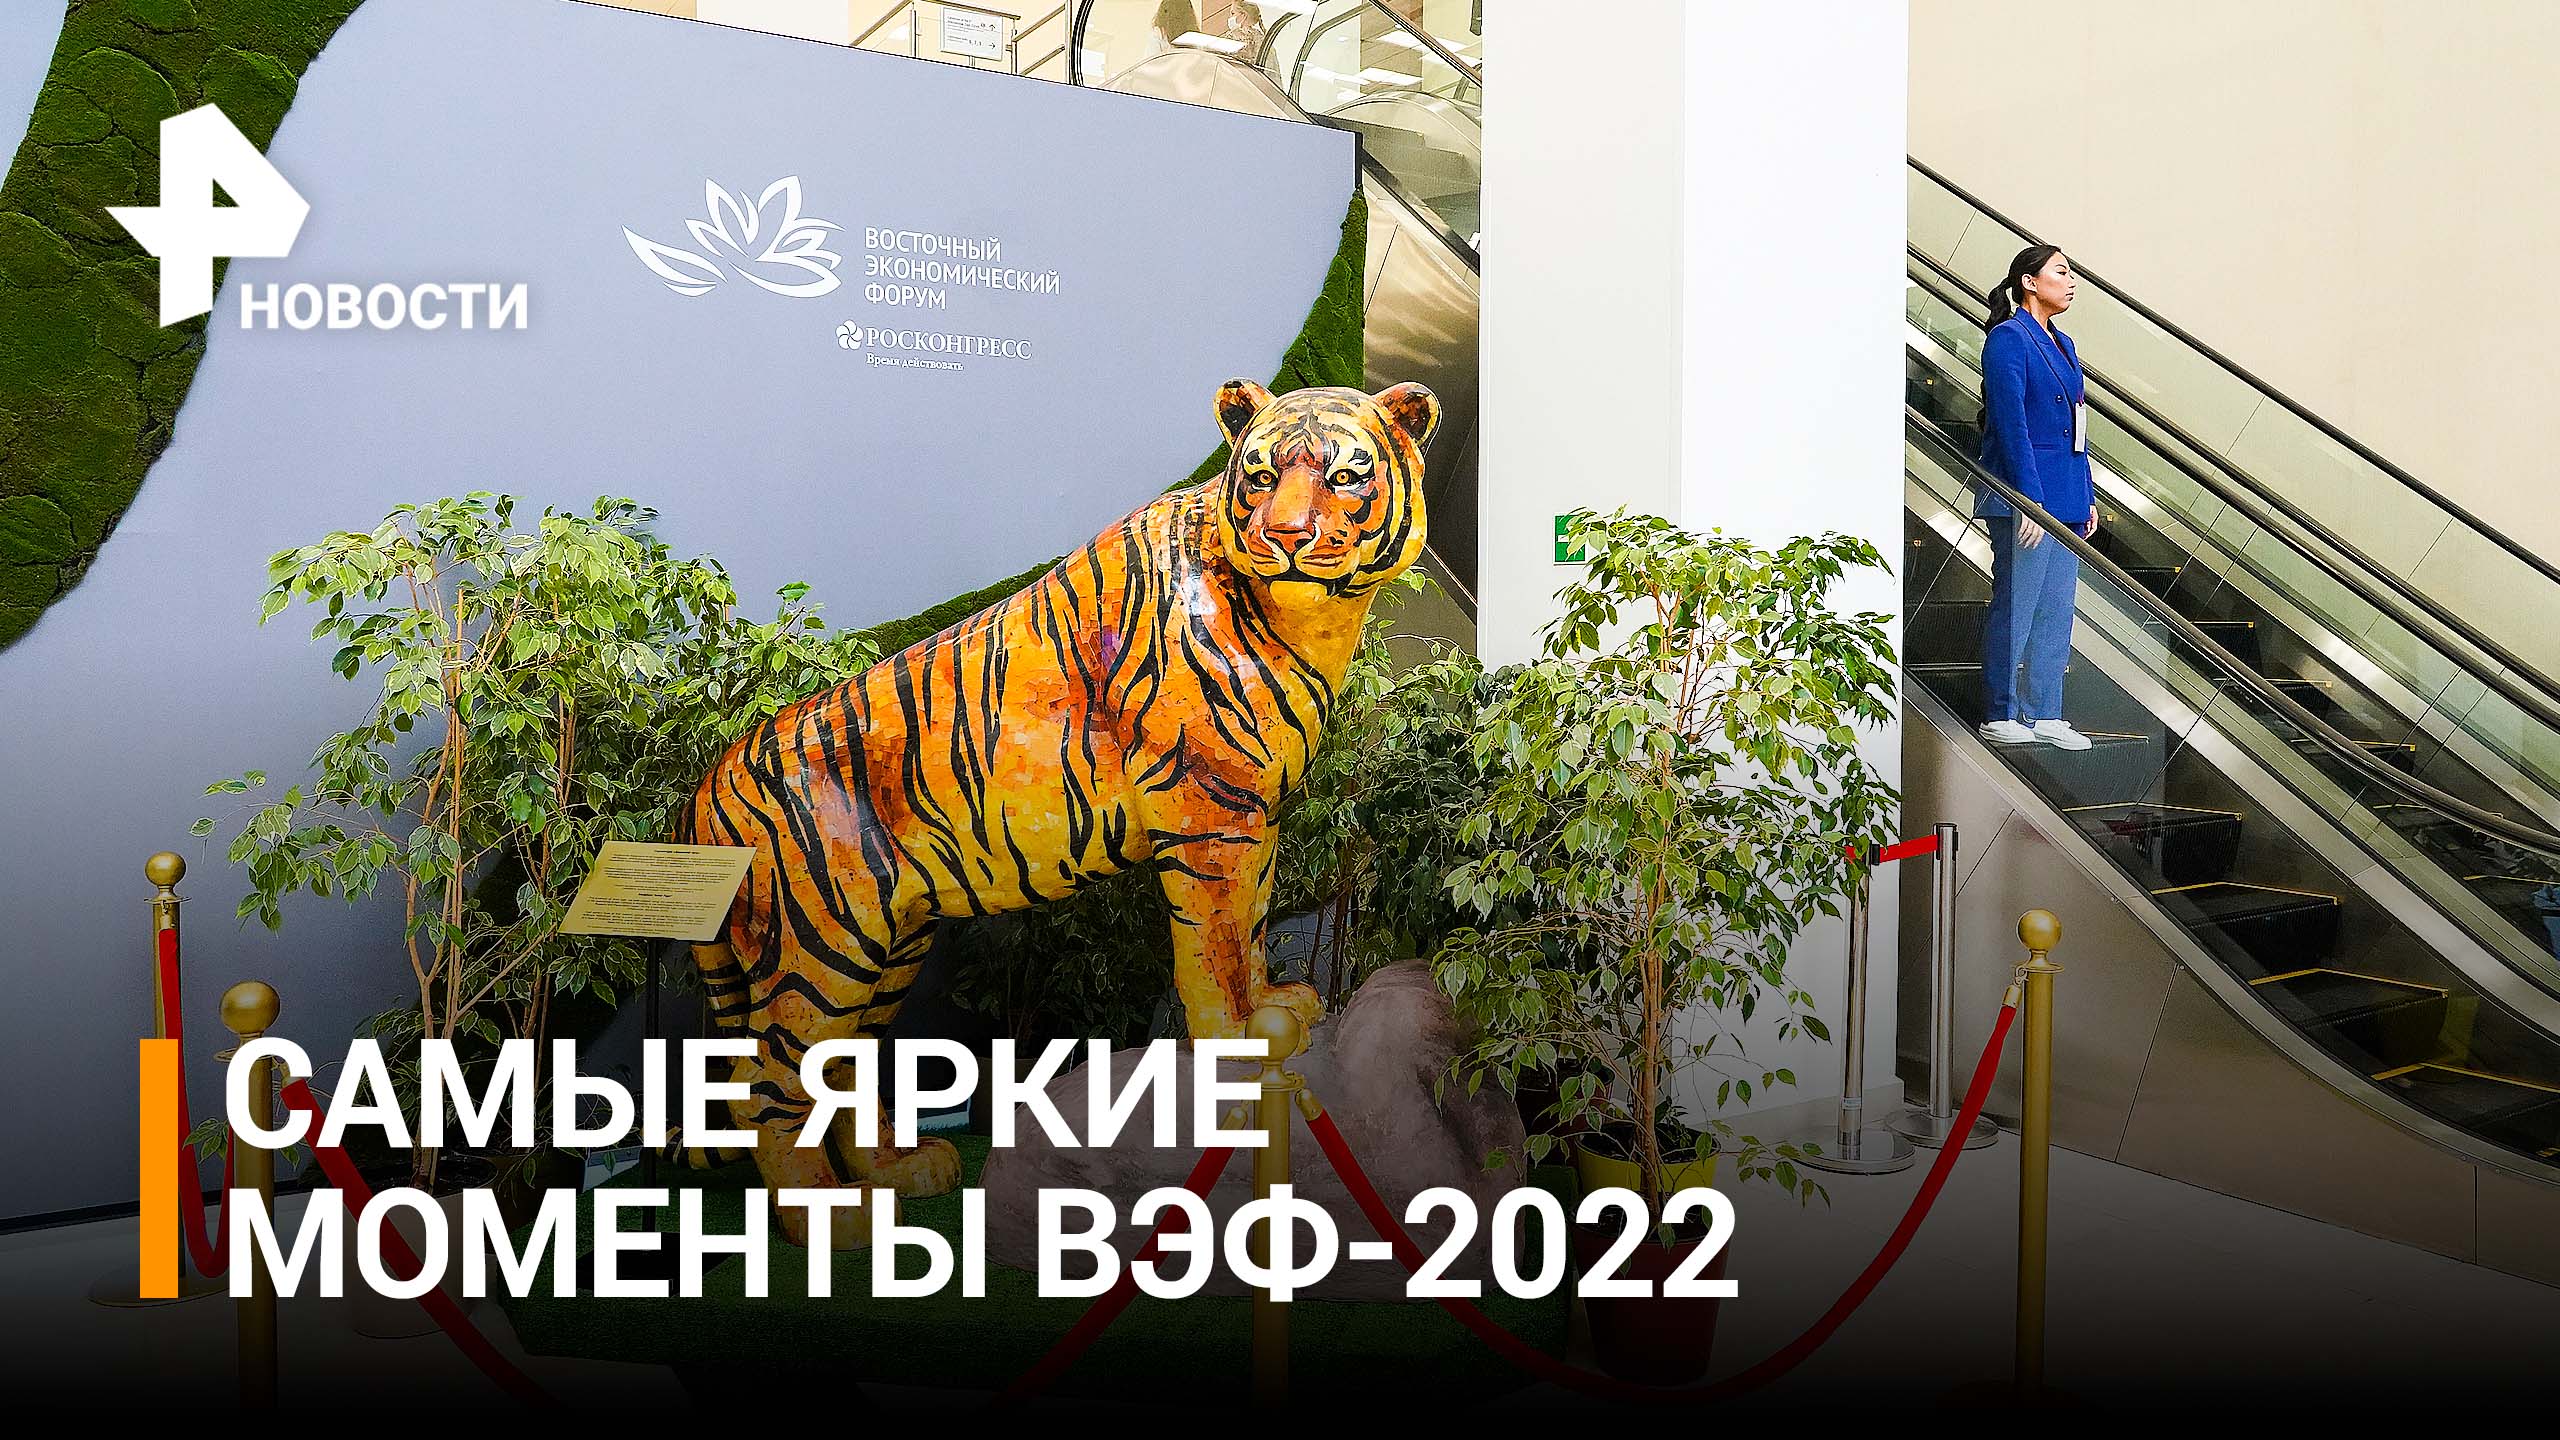 Регионы Дальнего Востока представили свои павильоны на ВЭФ-2022 / РЕН Новости